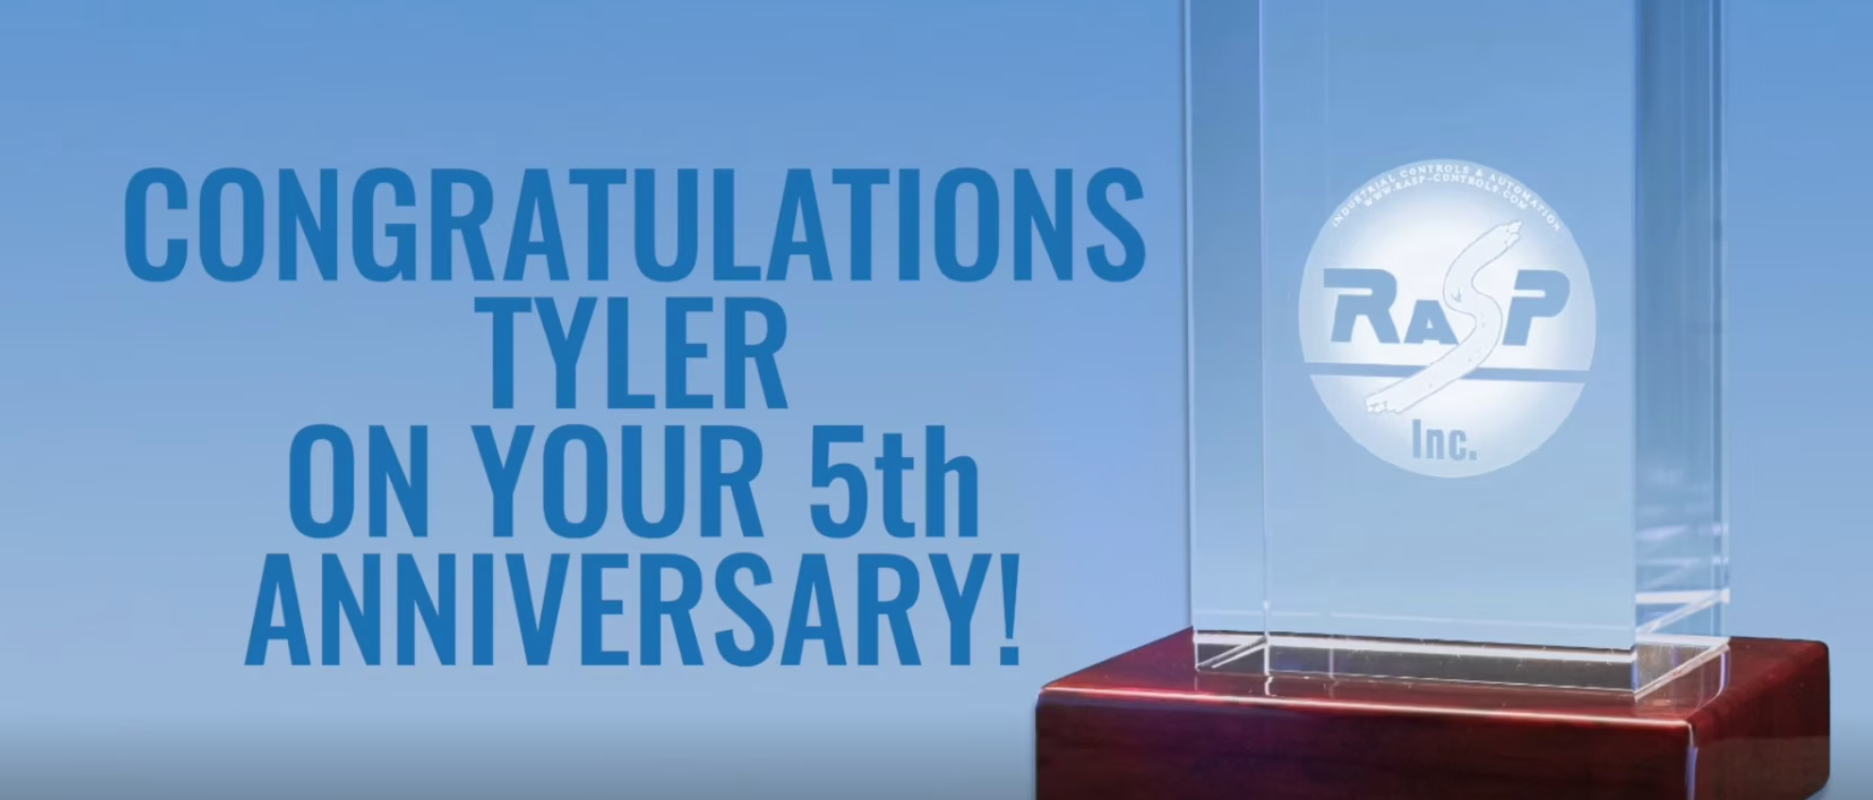 Tyler anniversary